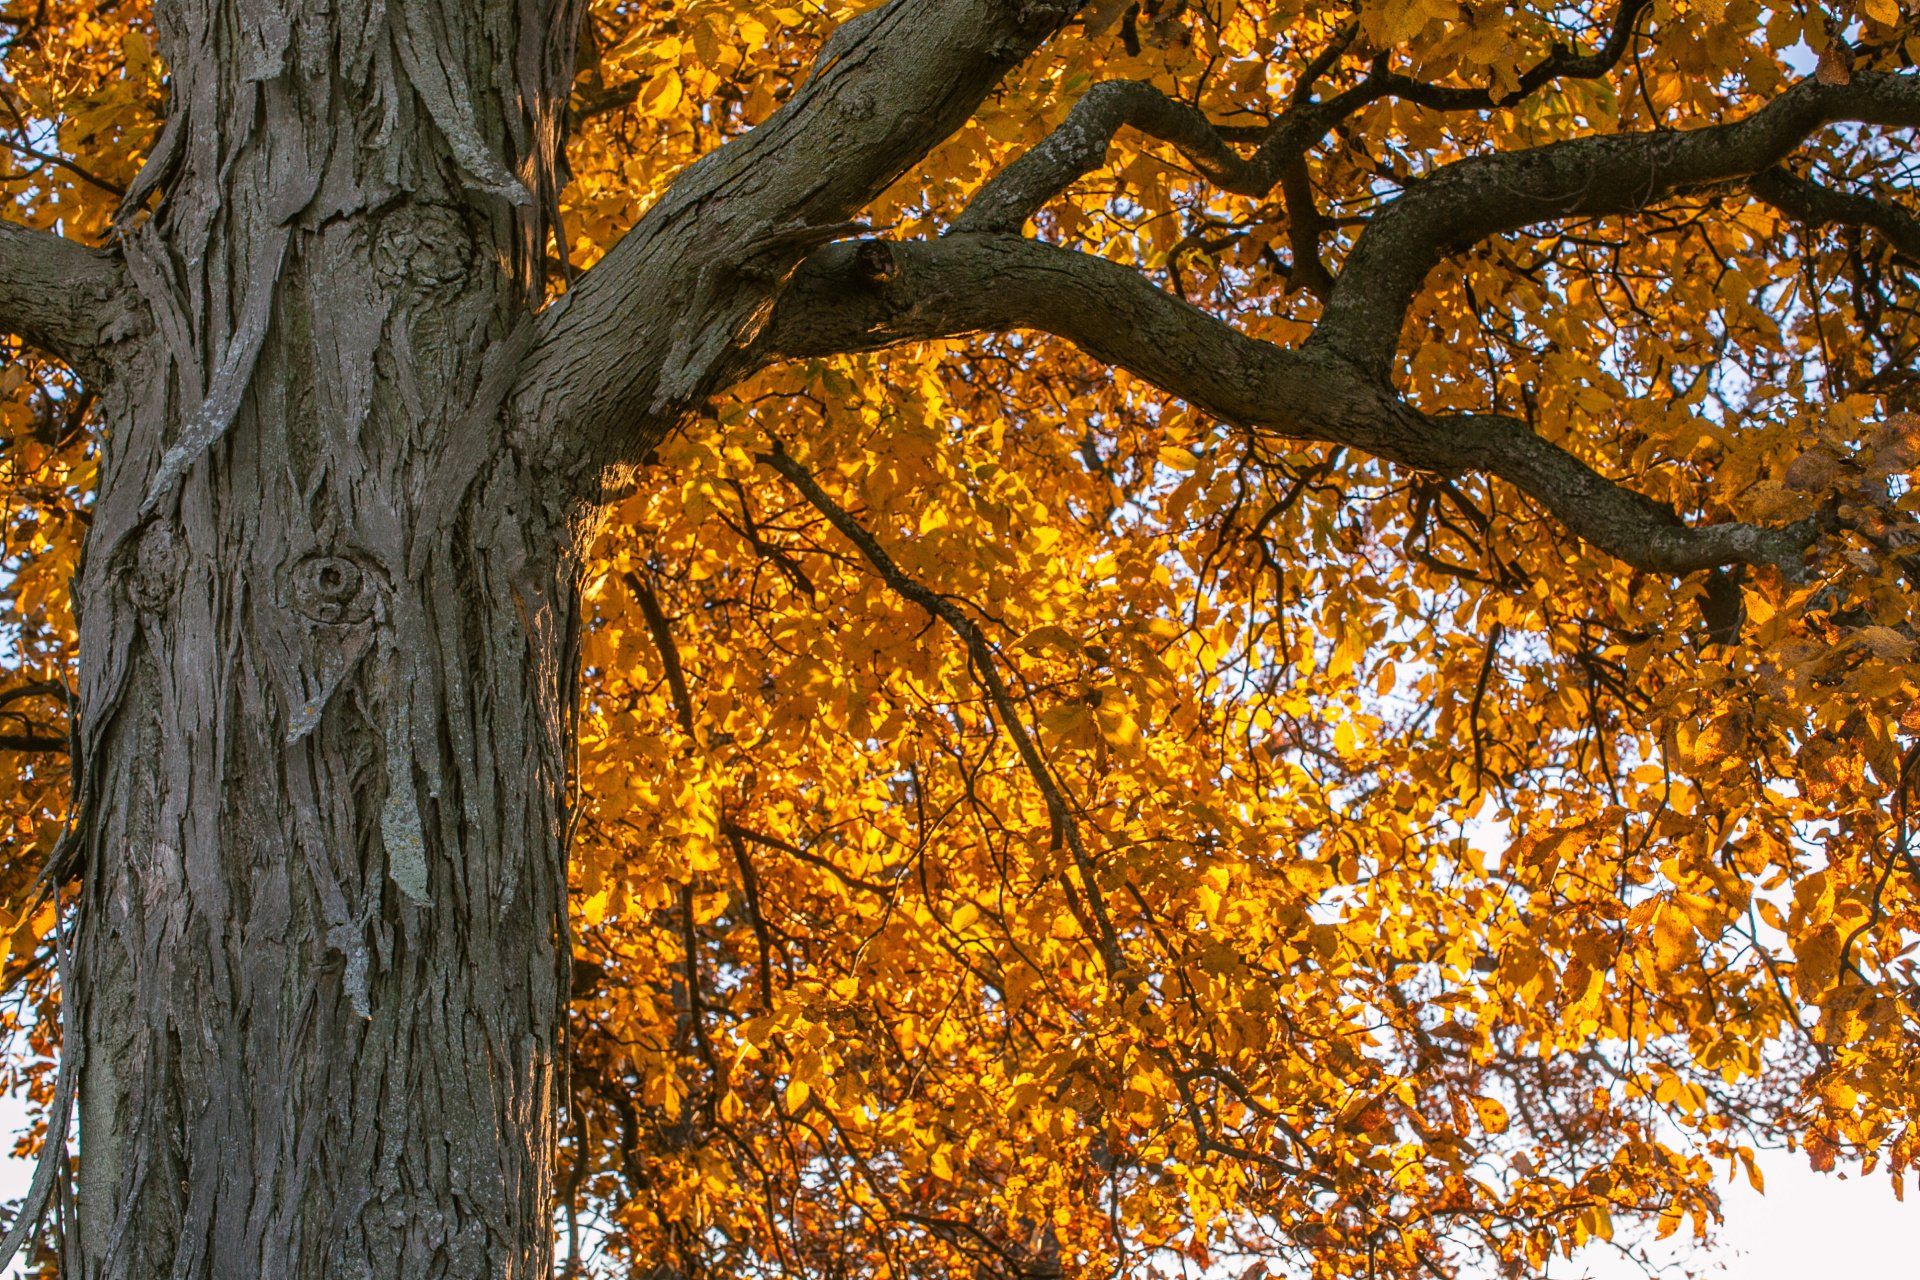 Ohio hickory tree